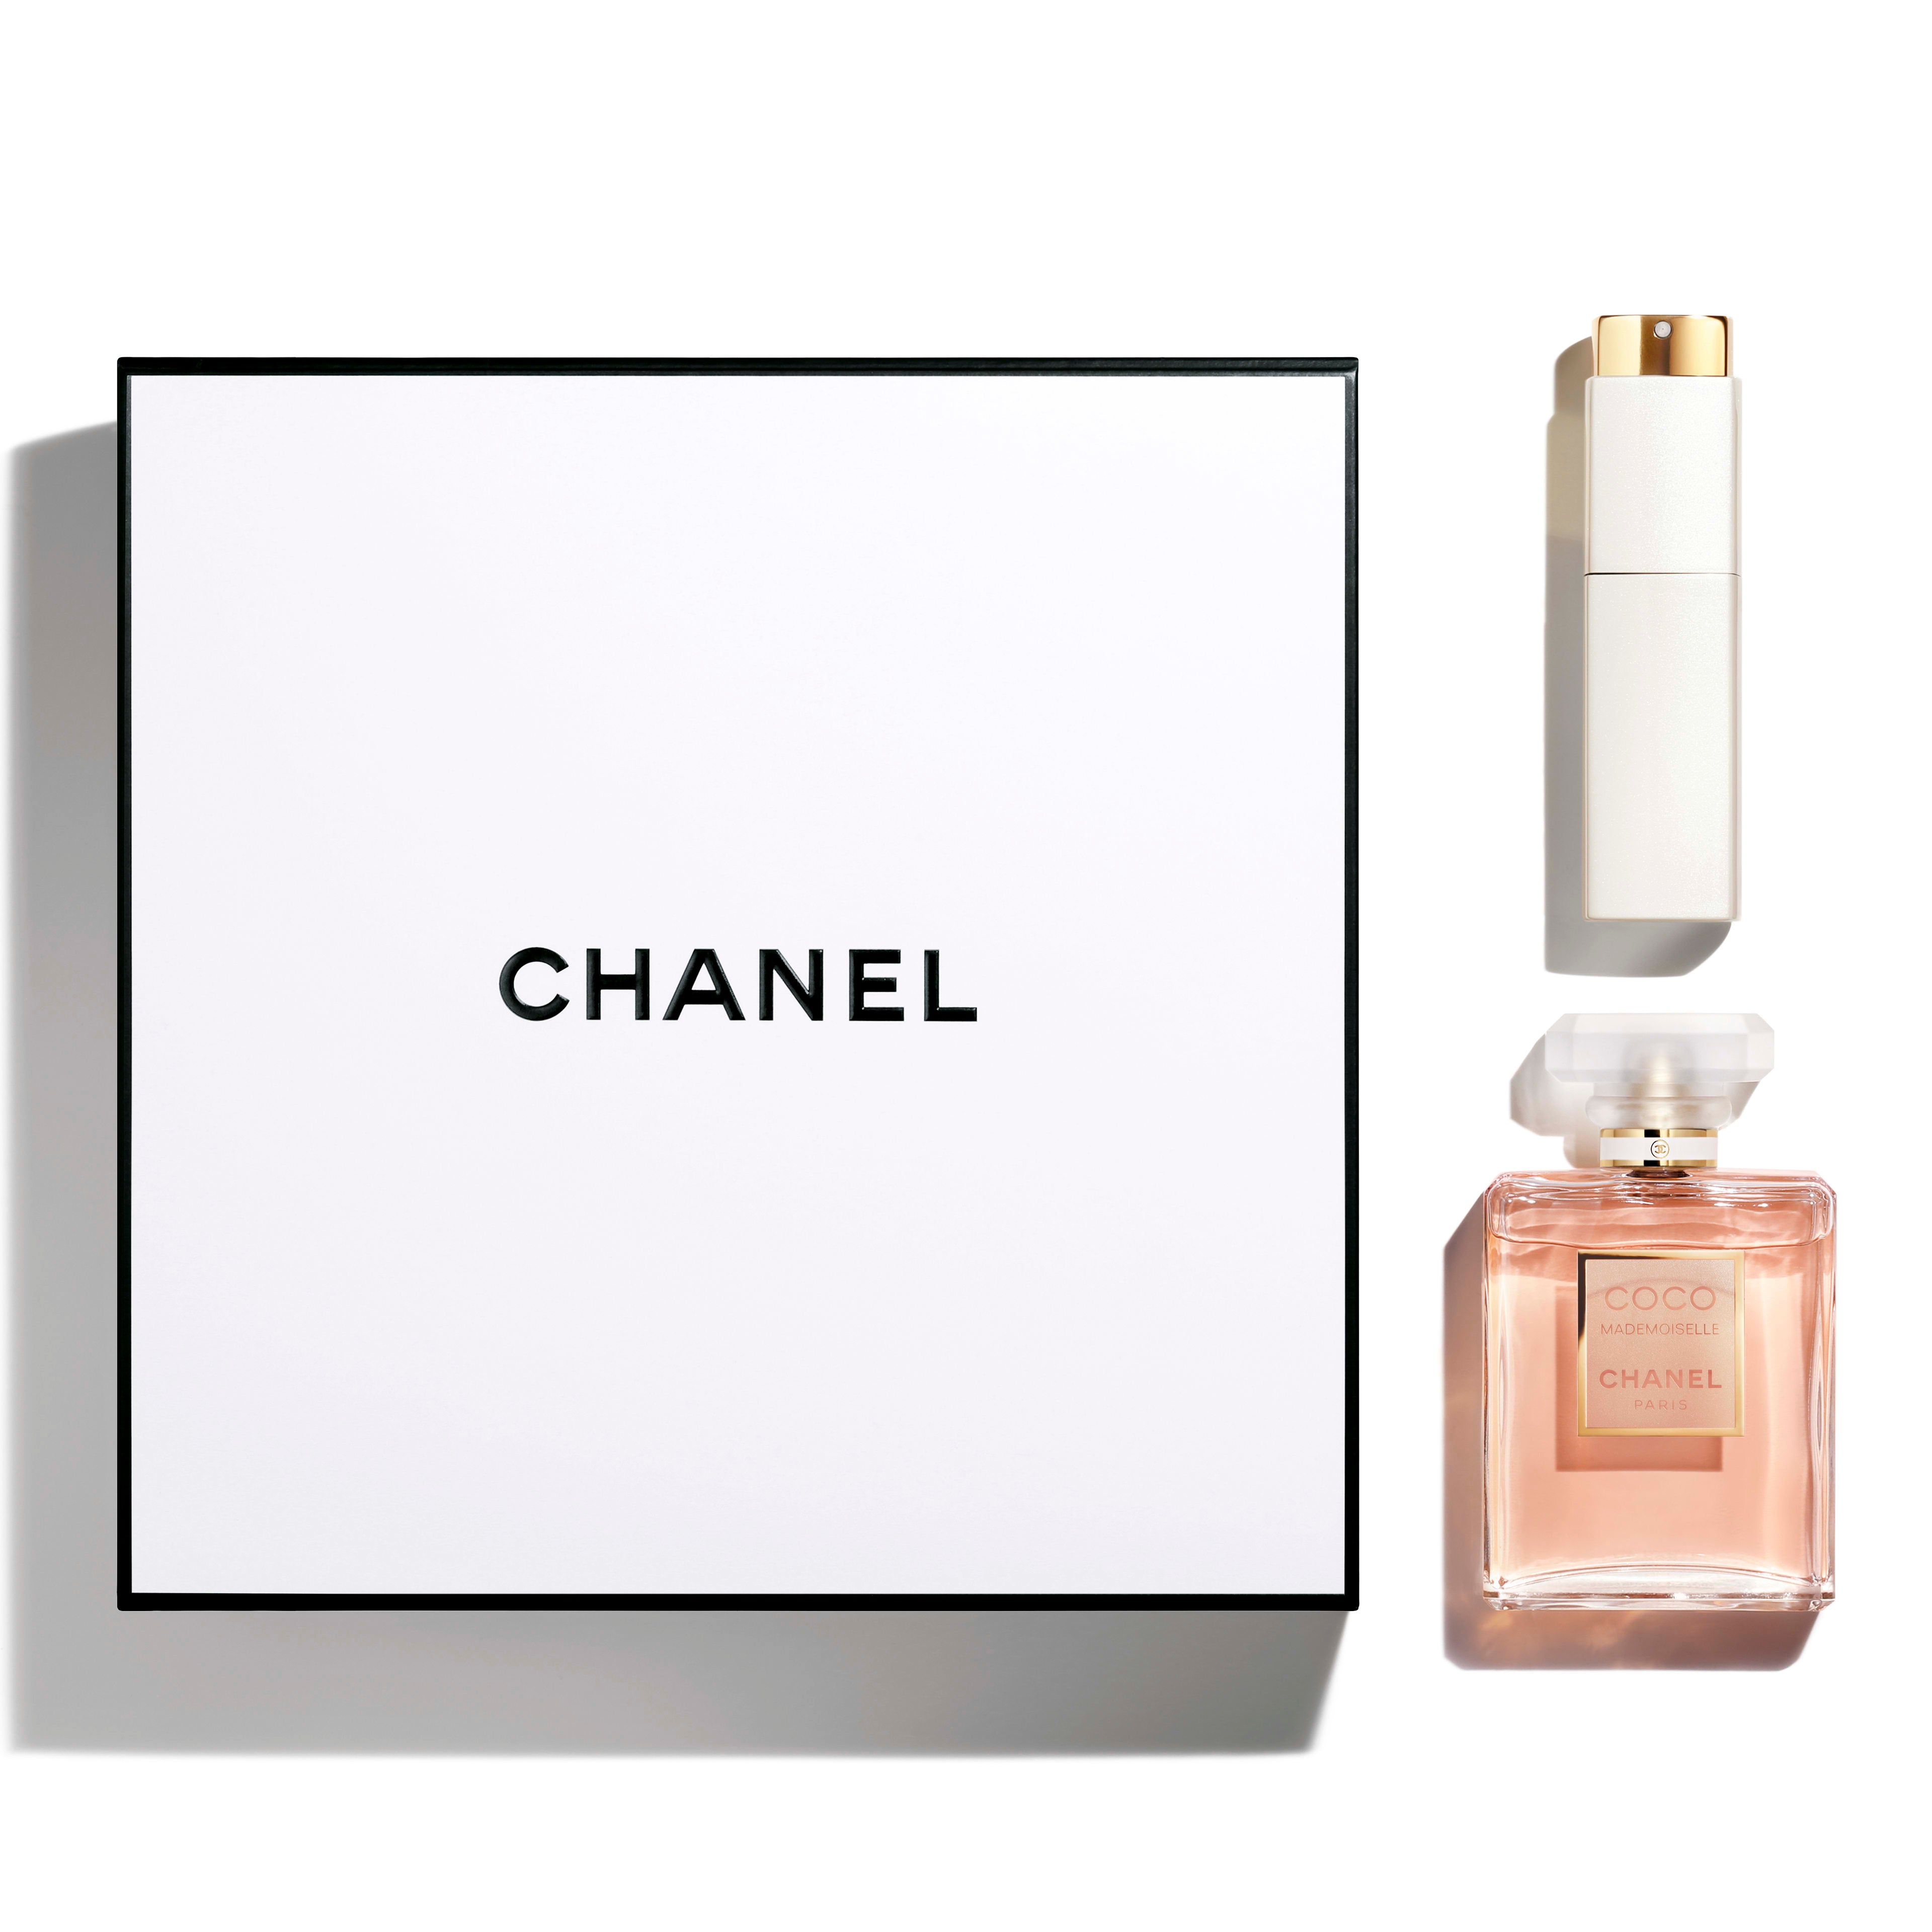 Eau de Toilette Chanel Eau Fraiche, Coco, No. 5, Allure 3x30ml Set 3 in 1  Chanel gift set for women and men